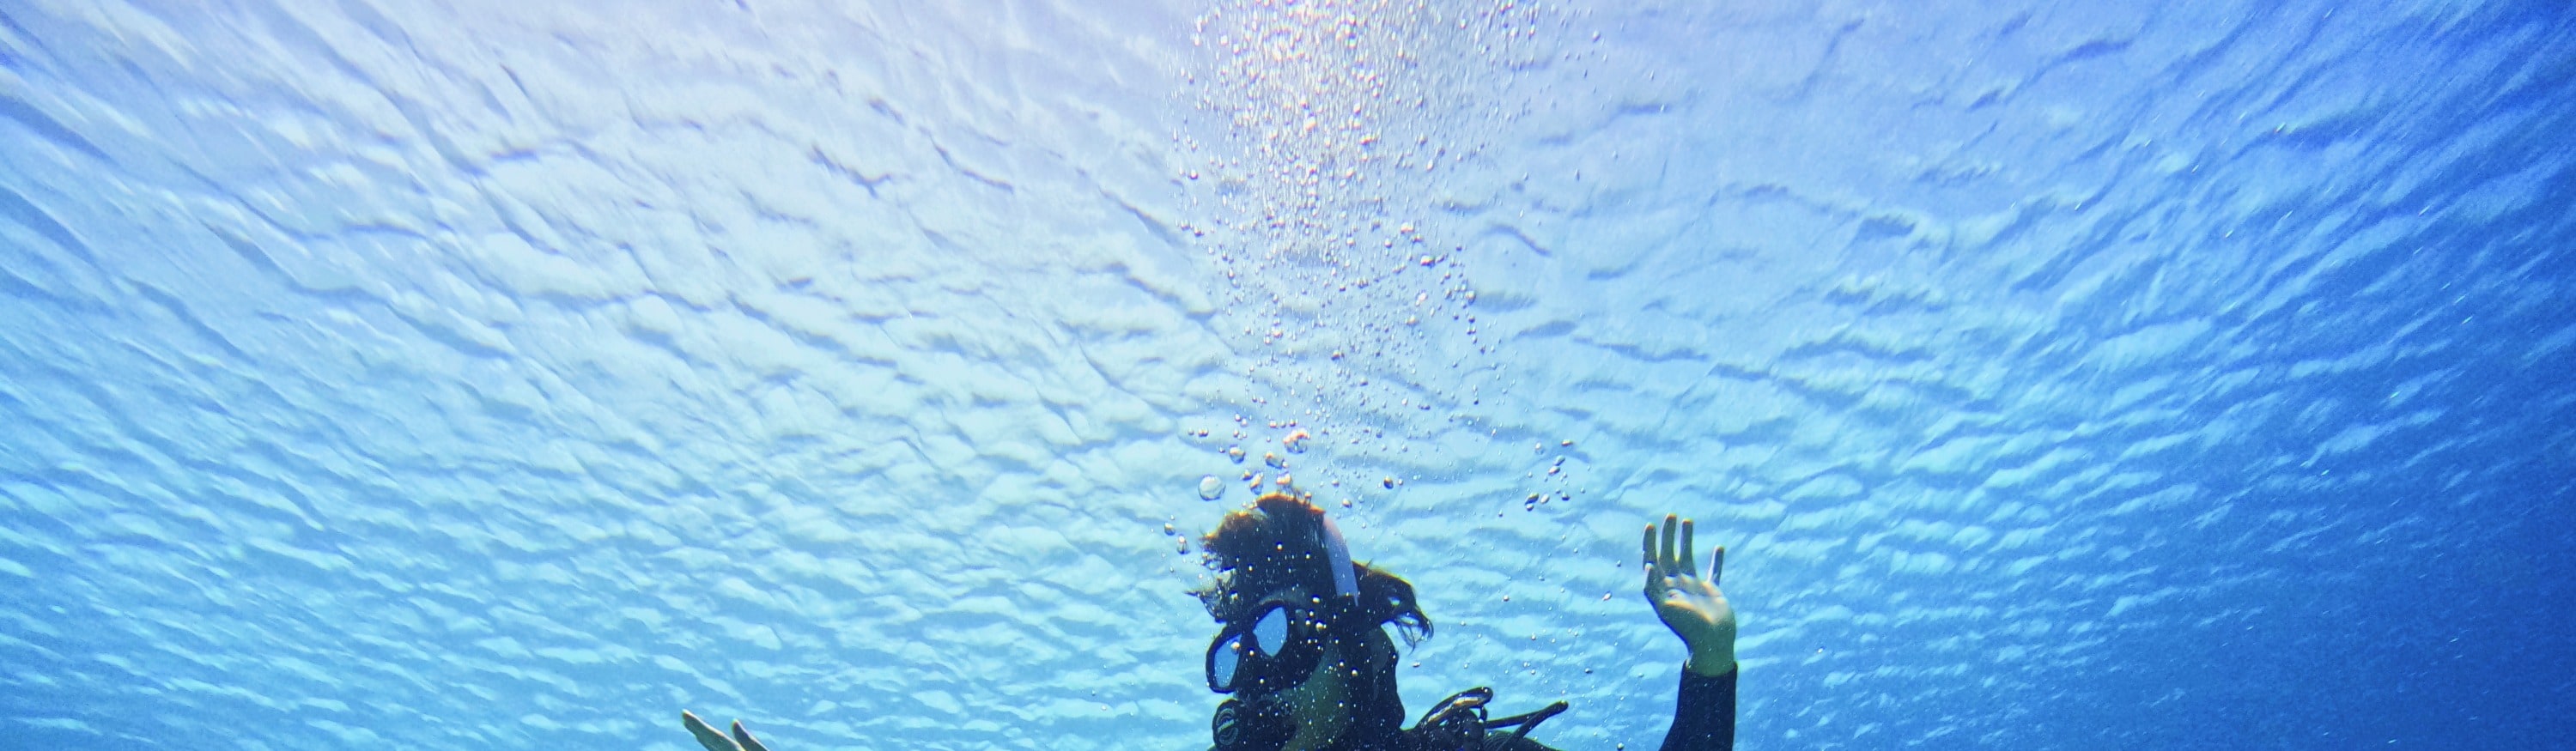 綠島: 火燒島 - 潛水 (PADI OW / AOW / 救援Rescue / 自由潛水考照 / 體驗潛水 / 旅遊潛水